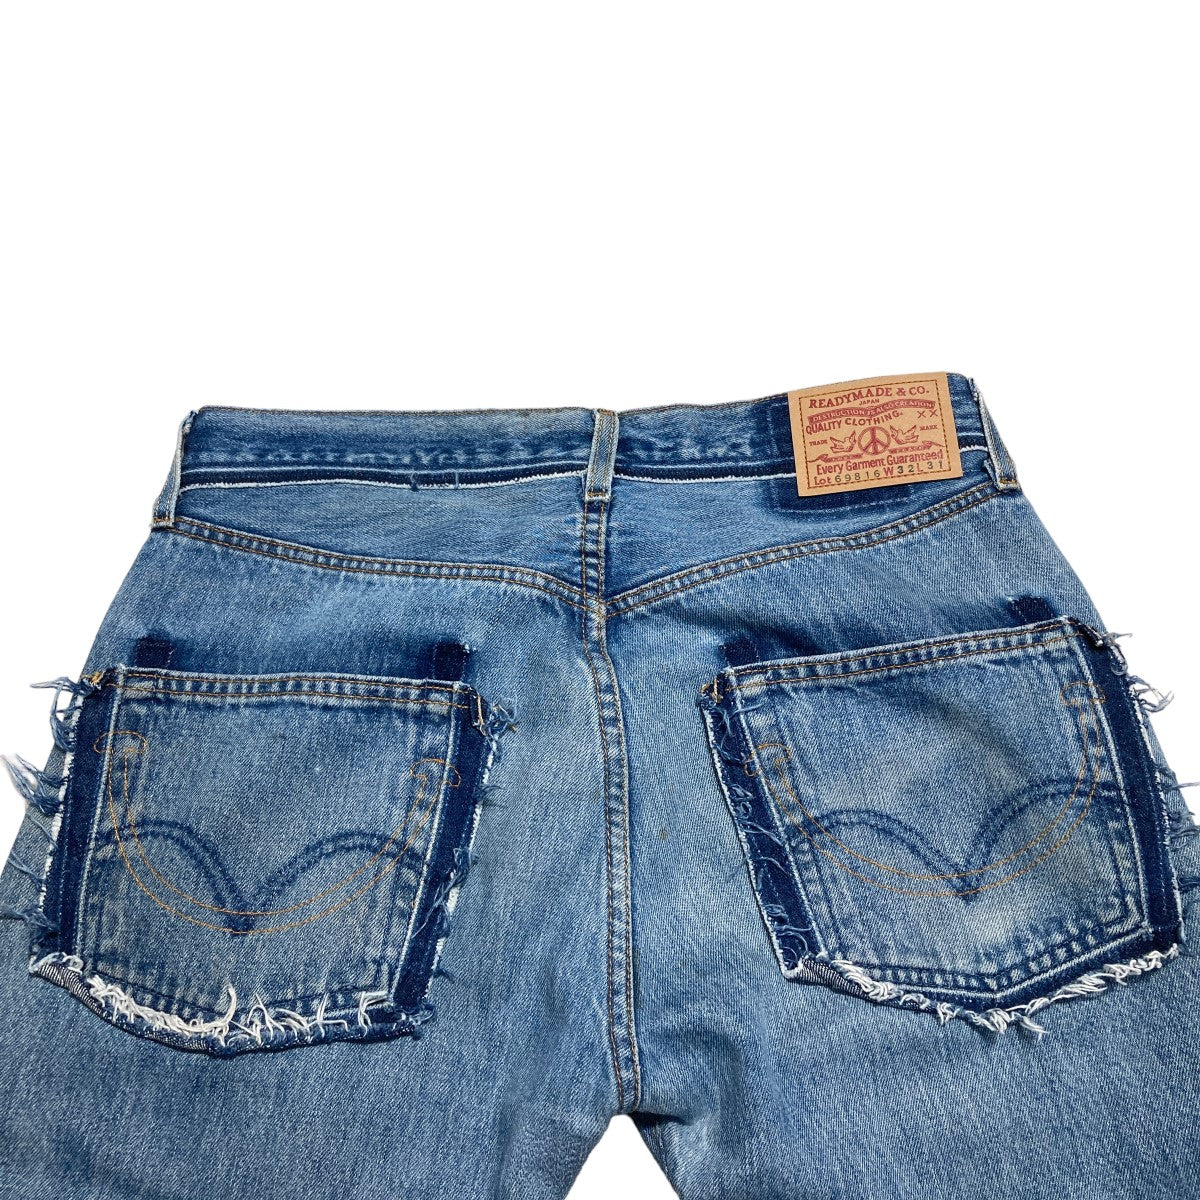 31,200円READY MADE re jeans 再構築デニムパンツ